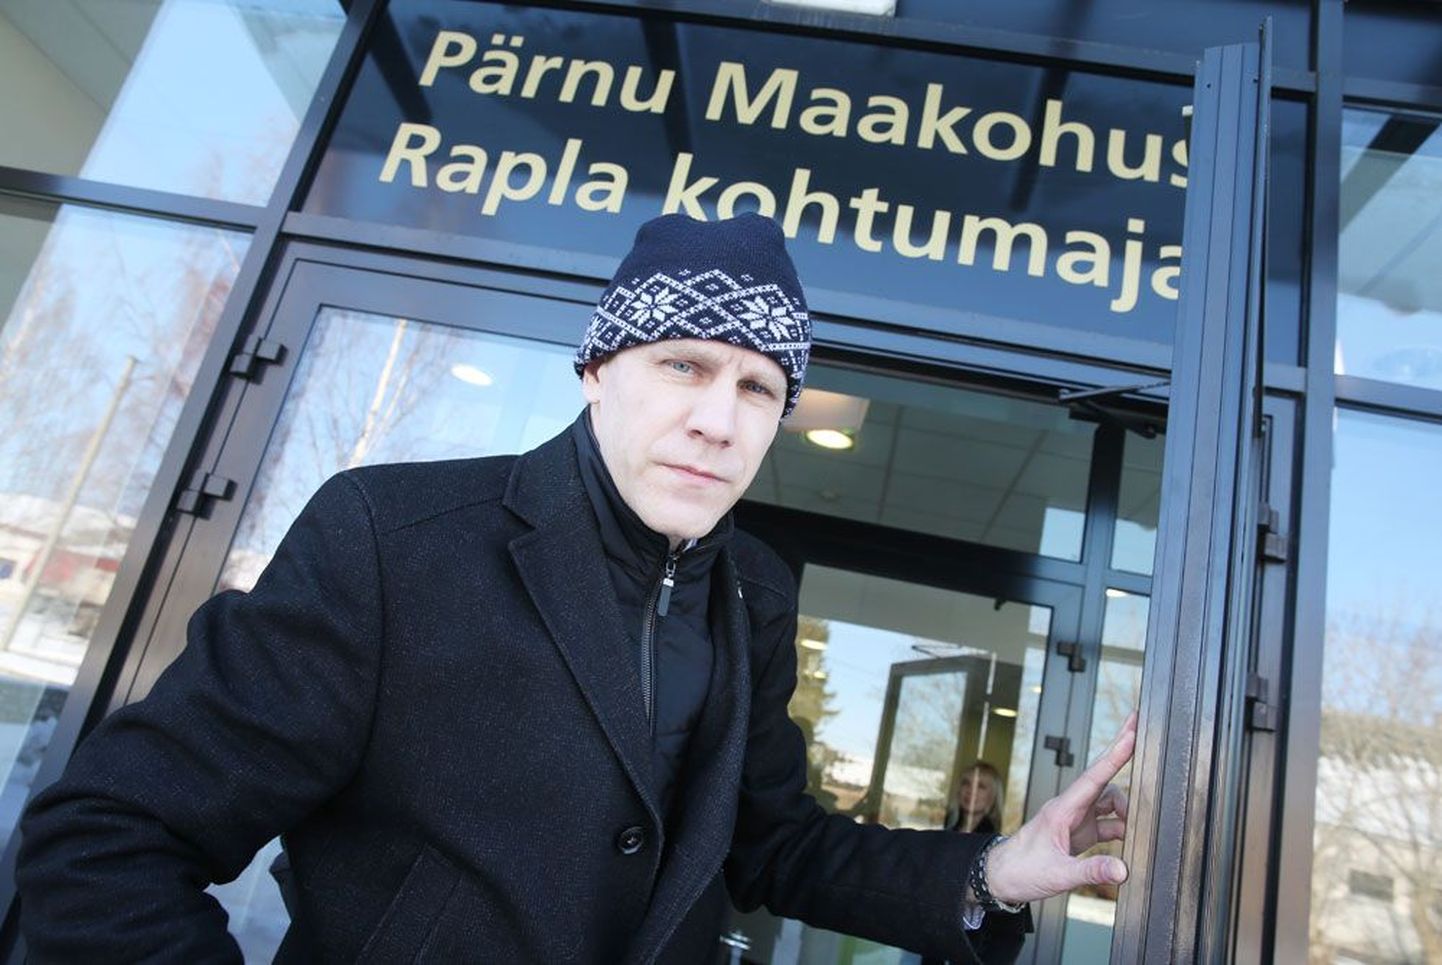 Keskkonnateenuste Põhja regiooni juhataja Kalle Grents lükkas talvel Rapla kohtumajas tagasi kõik endise tööandja esitatud süüdistused ärisaladuste lekitamises ja variettevõtlusega tegelemises.